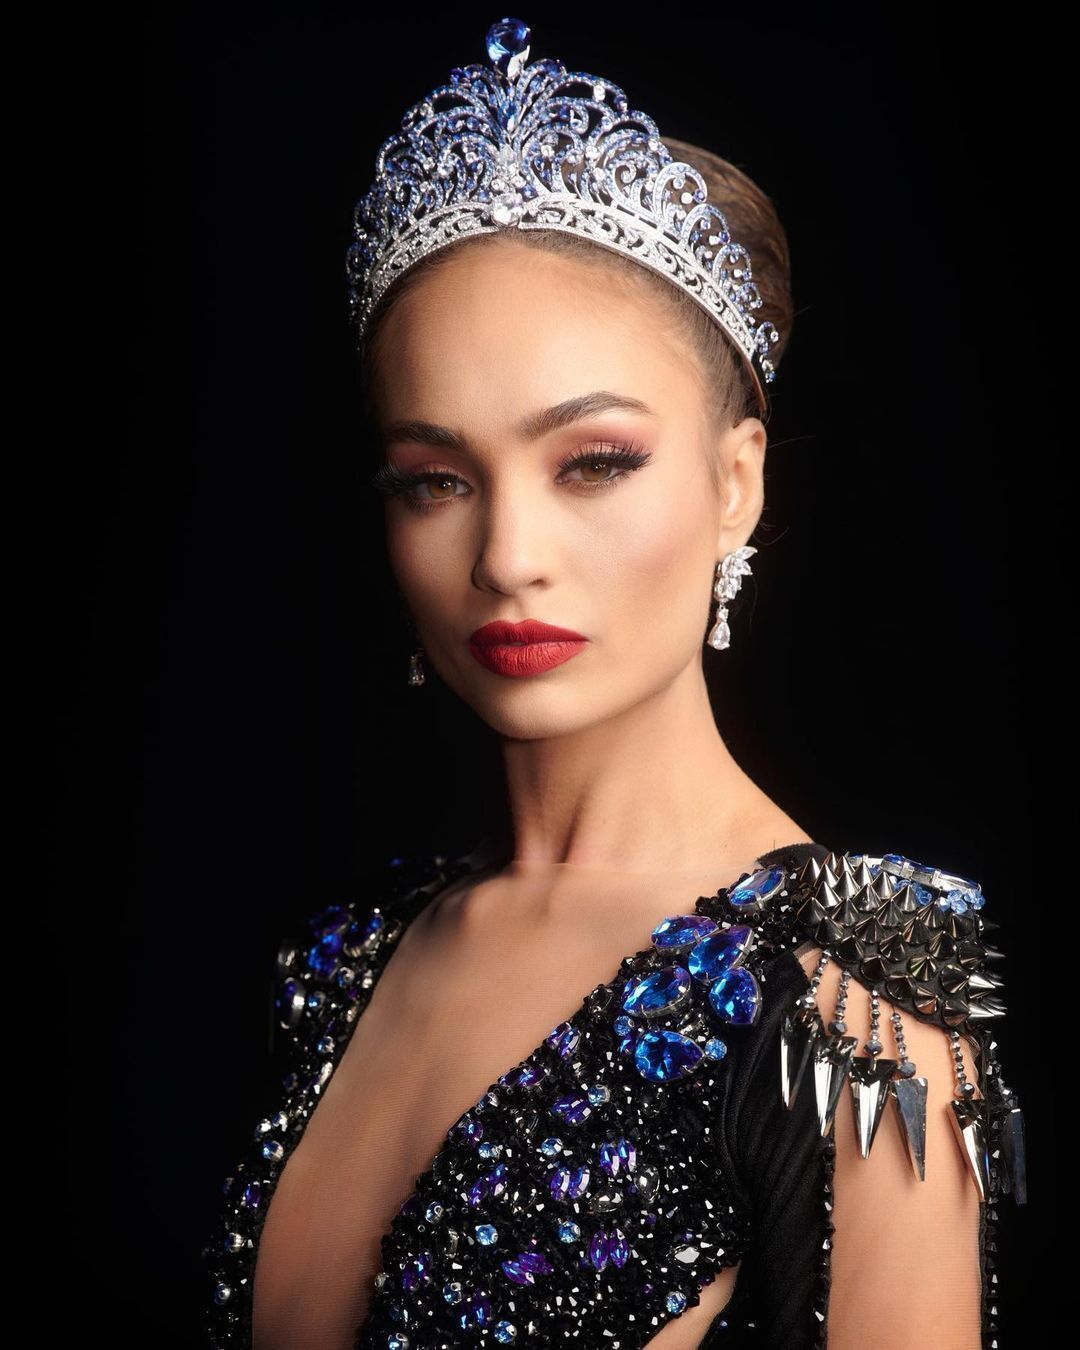 Не один мільйон доларів: мережу шокувала вартість корони на "Міс Всесвіт" із діамантами та сапфірами